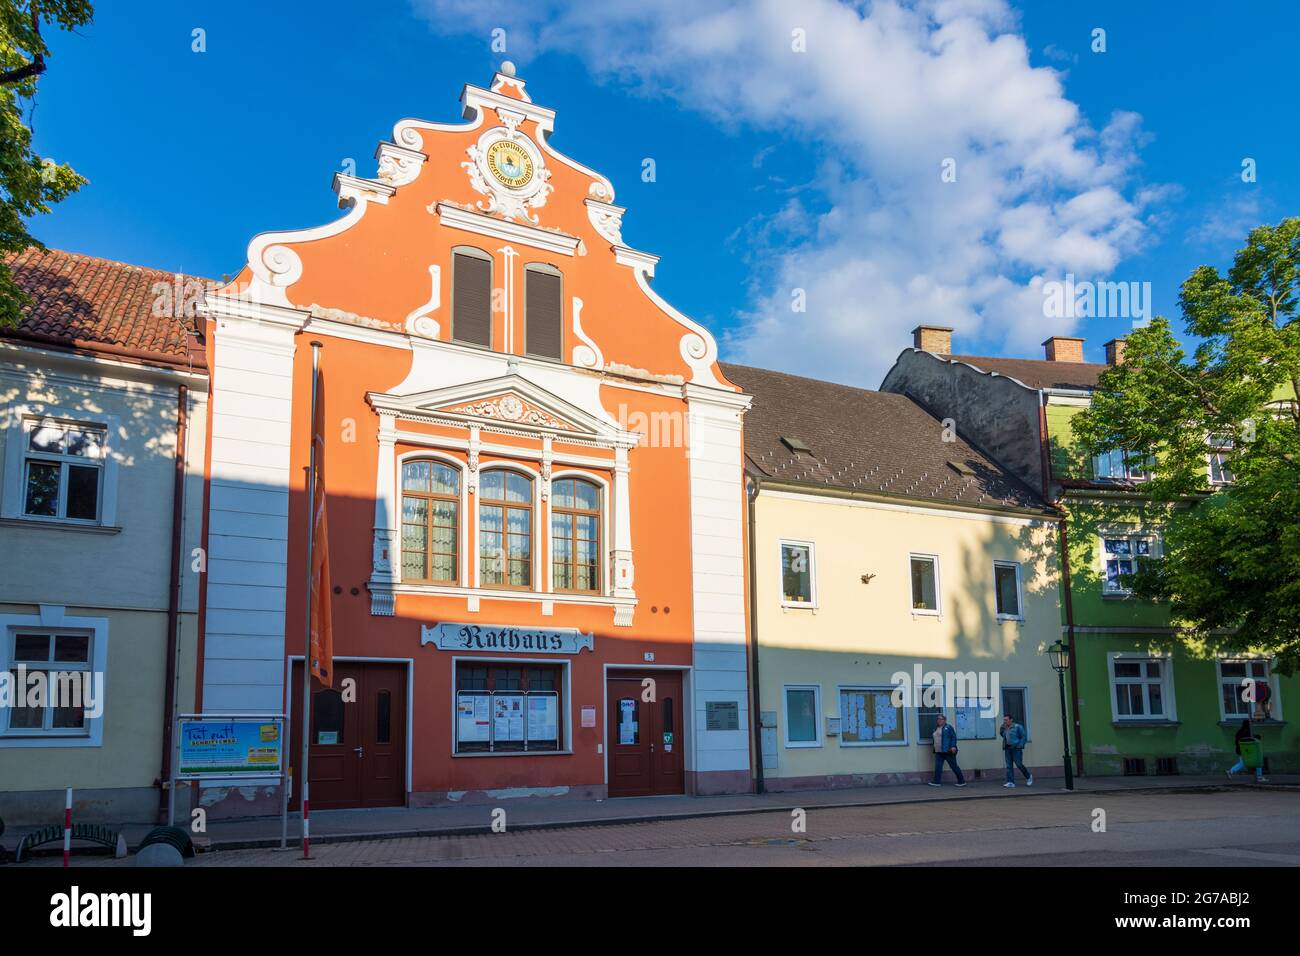 Groß-Enzersdorf, Town Hall in Donau, Niederösterreich / Lower Austria, Austria Stock Photo